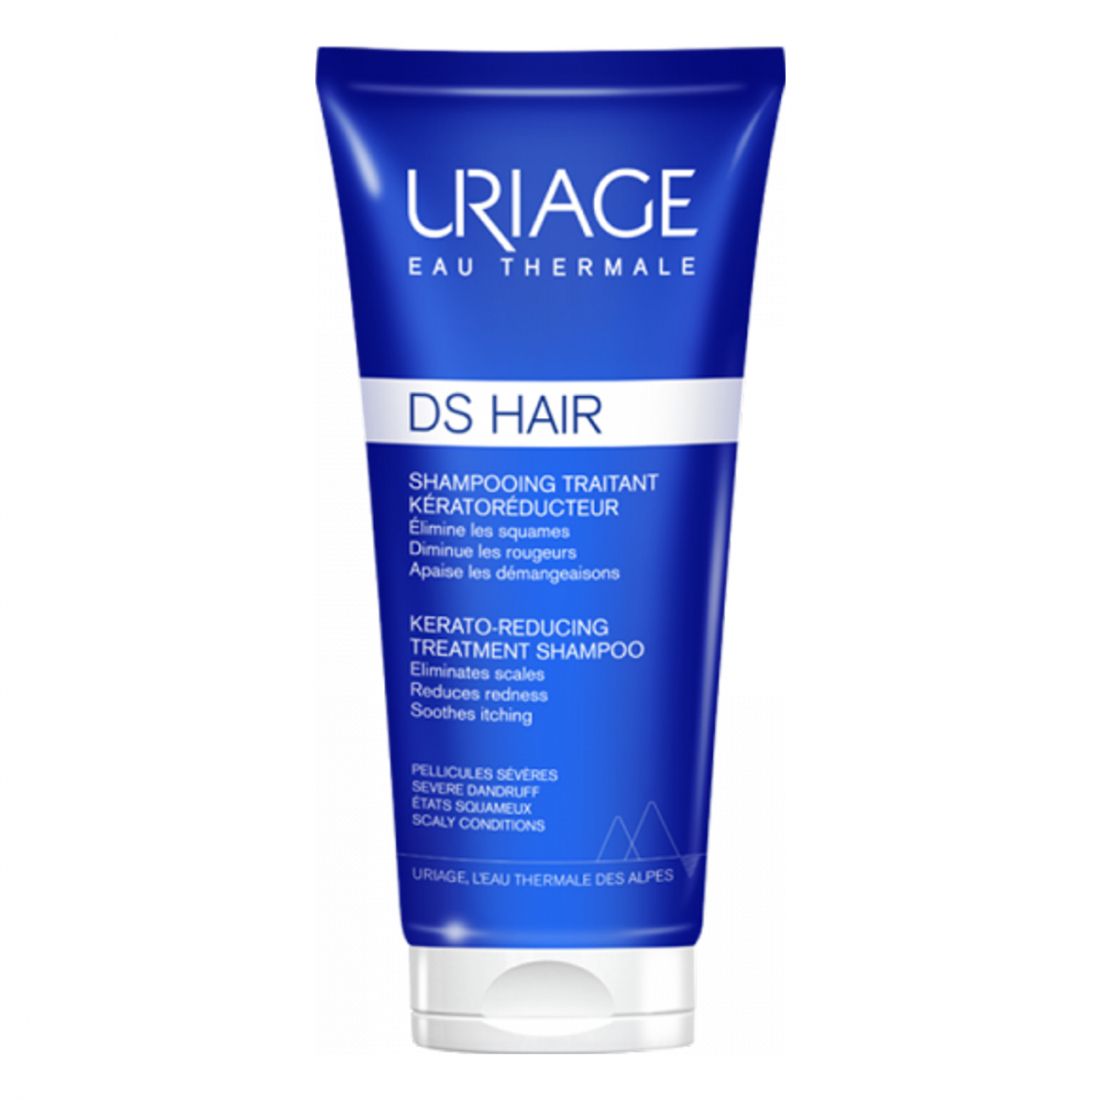 Uriage - 'Ds Hair' Shampooing Traitant Kératoréducteur - 150 ml